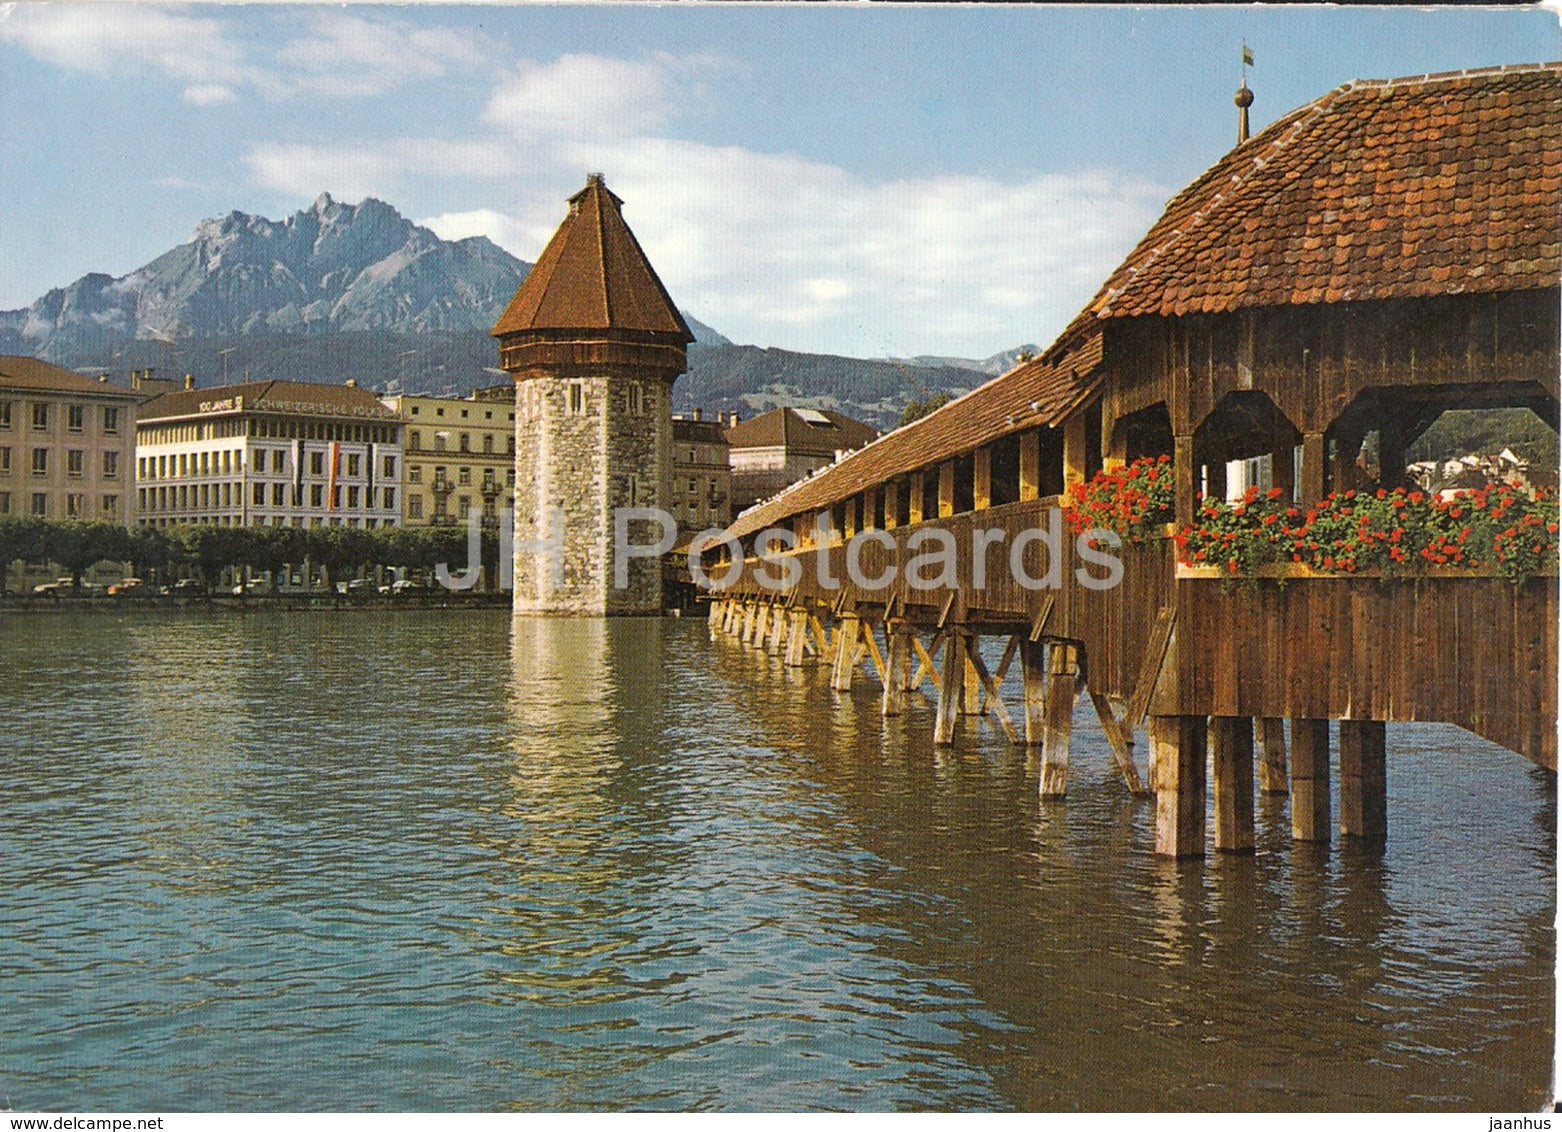 Lucerne - Luzern - Kapellbrucke mit Wasserturm und Pilatus - 1974 - Switzerland - used - JH Postcards